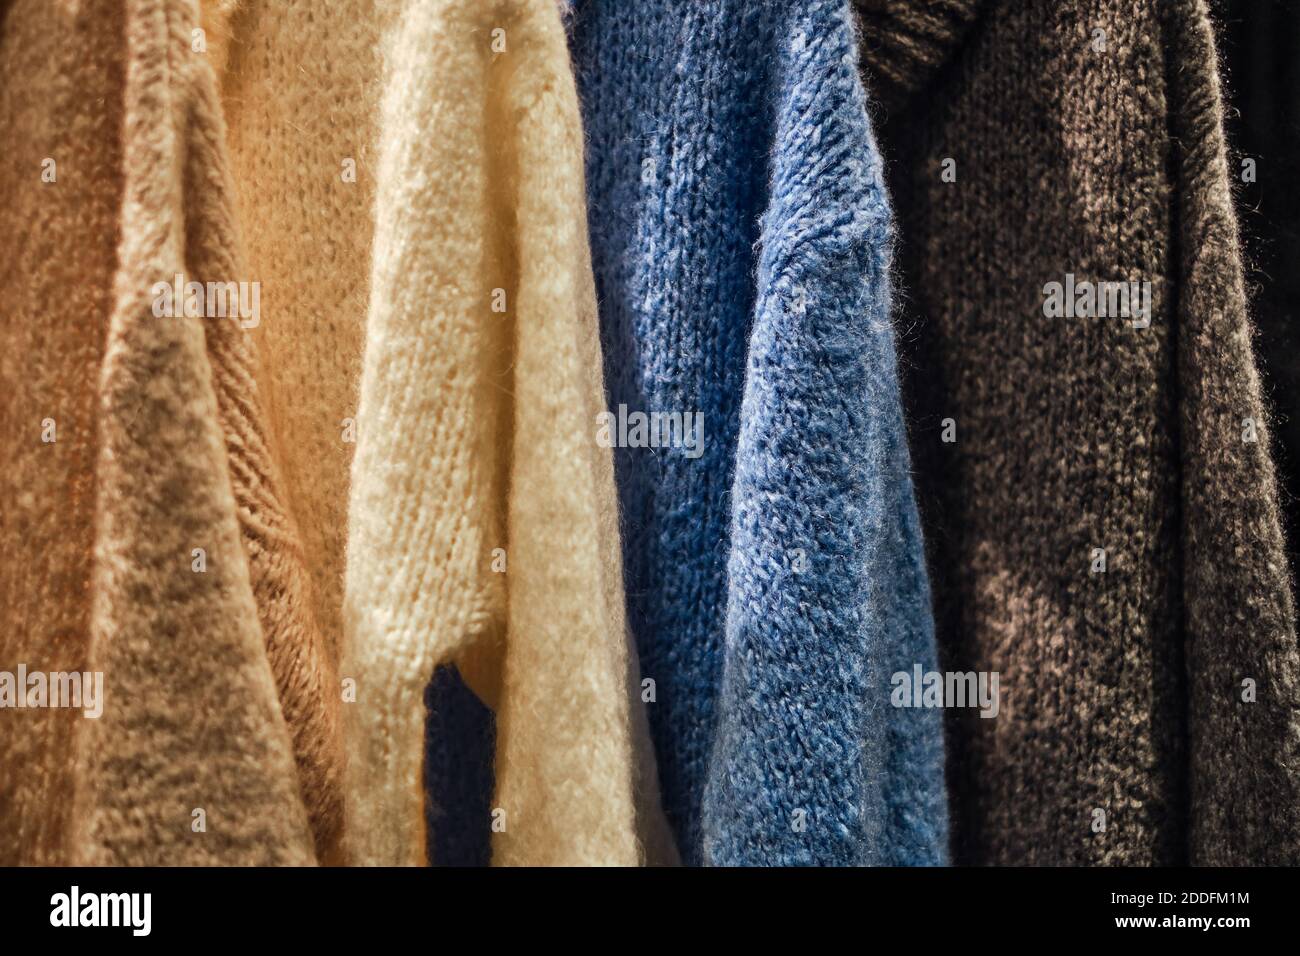 Pullover invernali lavorato a maglia su una rastrelliera in un negozio di moda. Immagine concettuale di Capsule wardrobe dei pullover nel negozio di panni. Pullover caldi fatti a mano in lana. Foto Stock